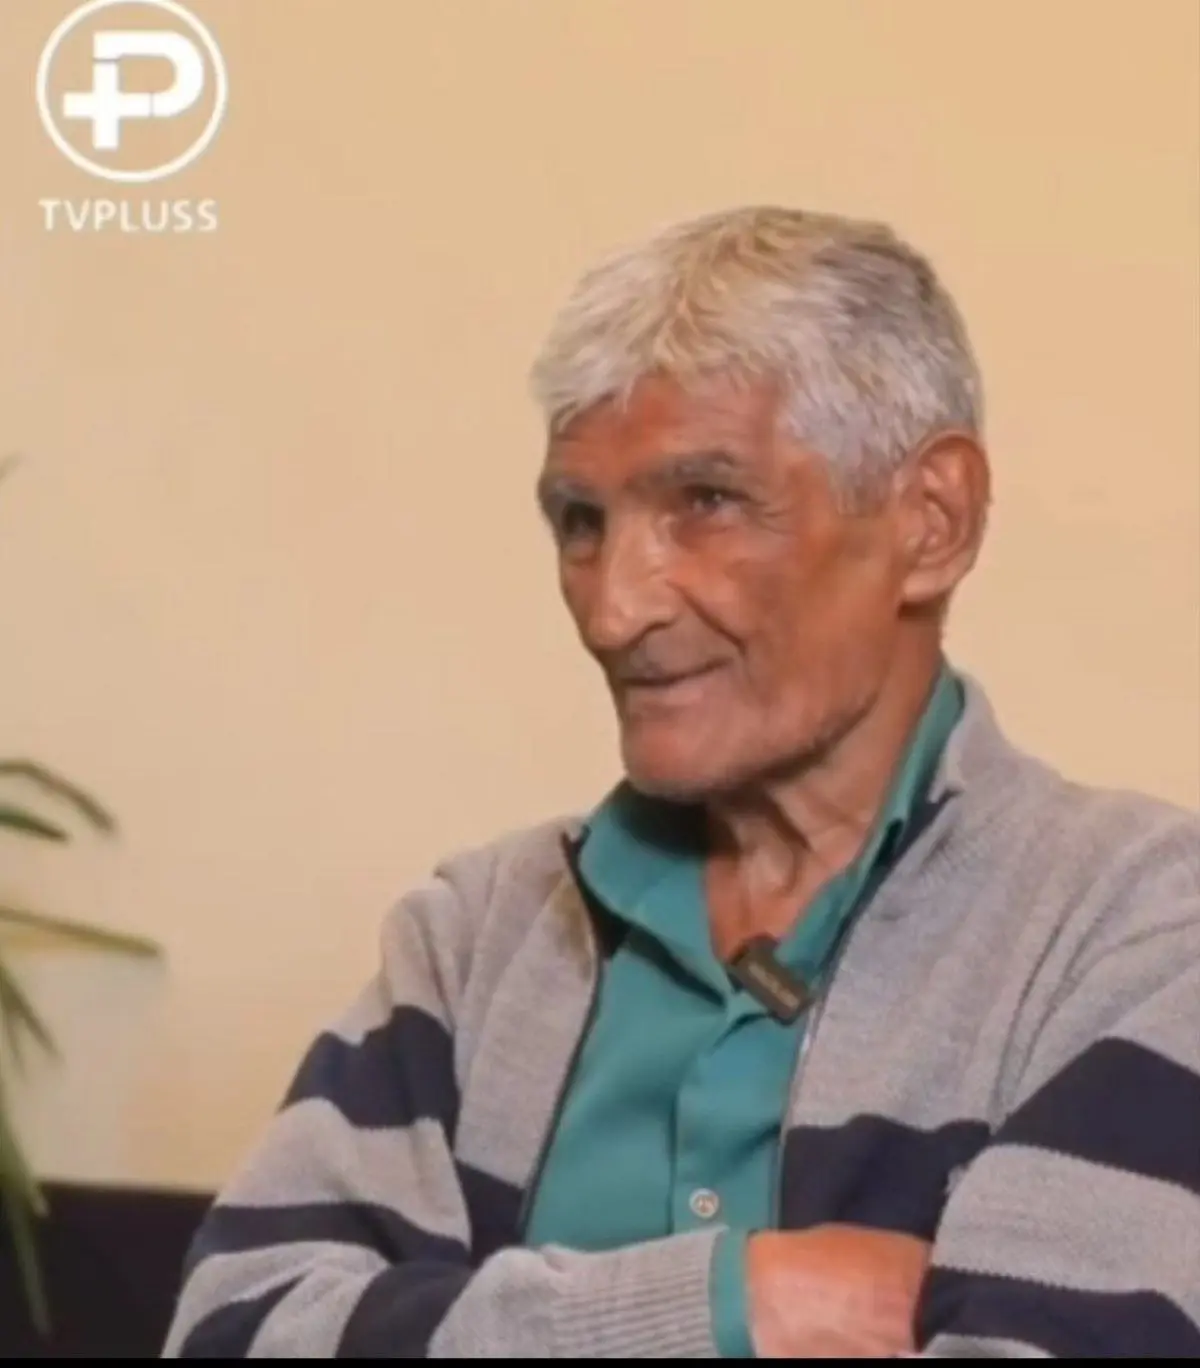 گفتگو با پیرمردی که در ۷۲ سالگی معروف شد! | گفتگو برنامه تیوی پلاس با مردی که توسط ویدئو شعر خواندنش مشهور شد +ویدئو